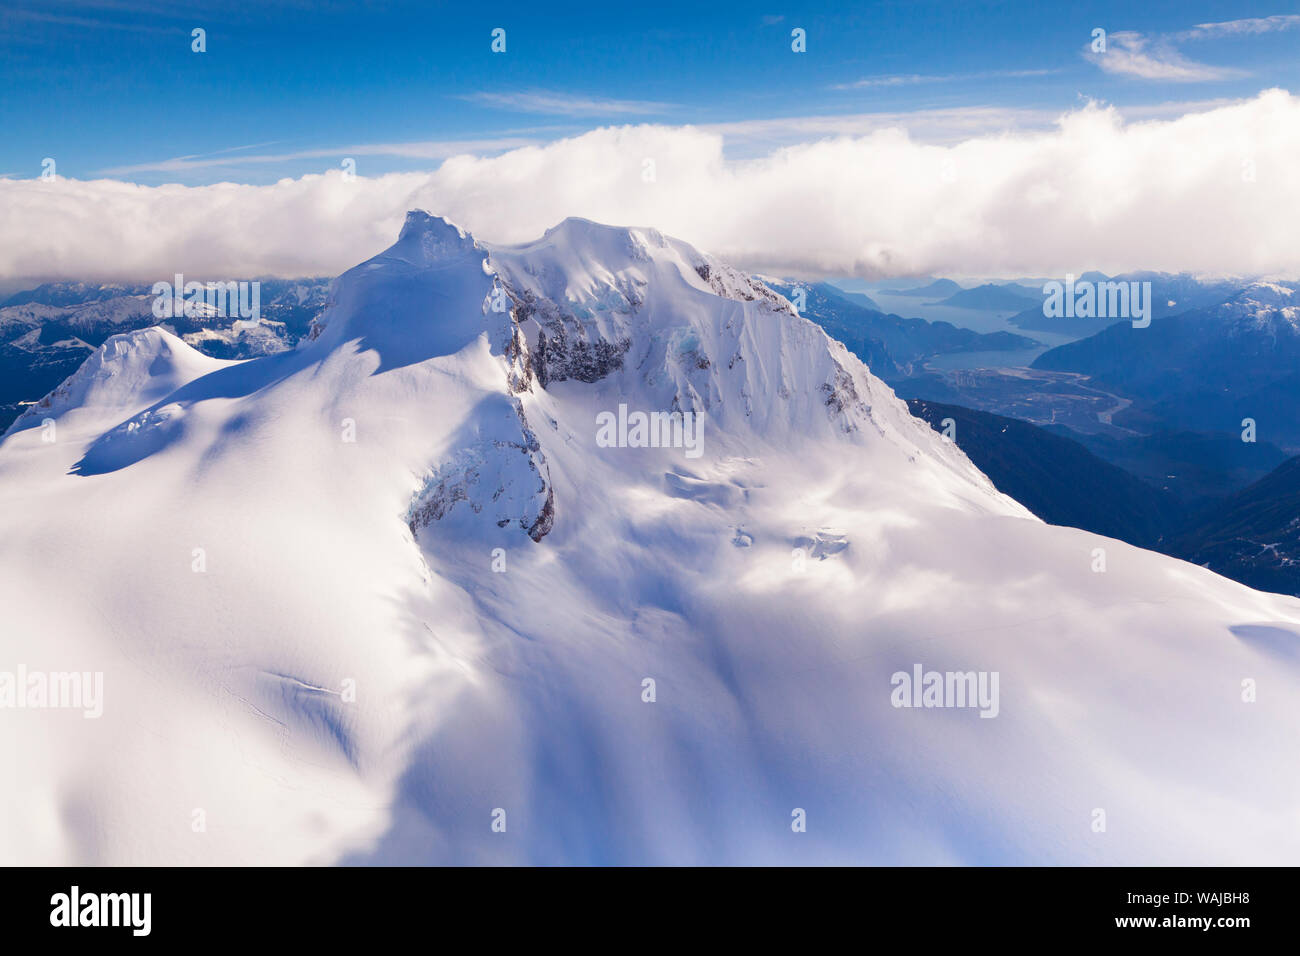 Vista aérea con el Monte Garibaldi en primer plano, con Howe Sound y Squamish en el fondo. British Columbia, Coast Mountains, Canadá Foto de stock